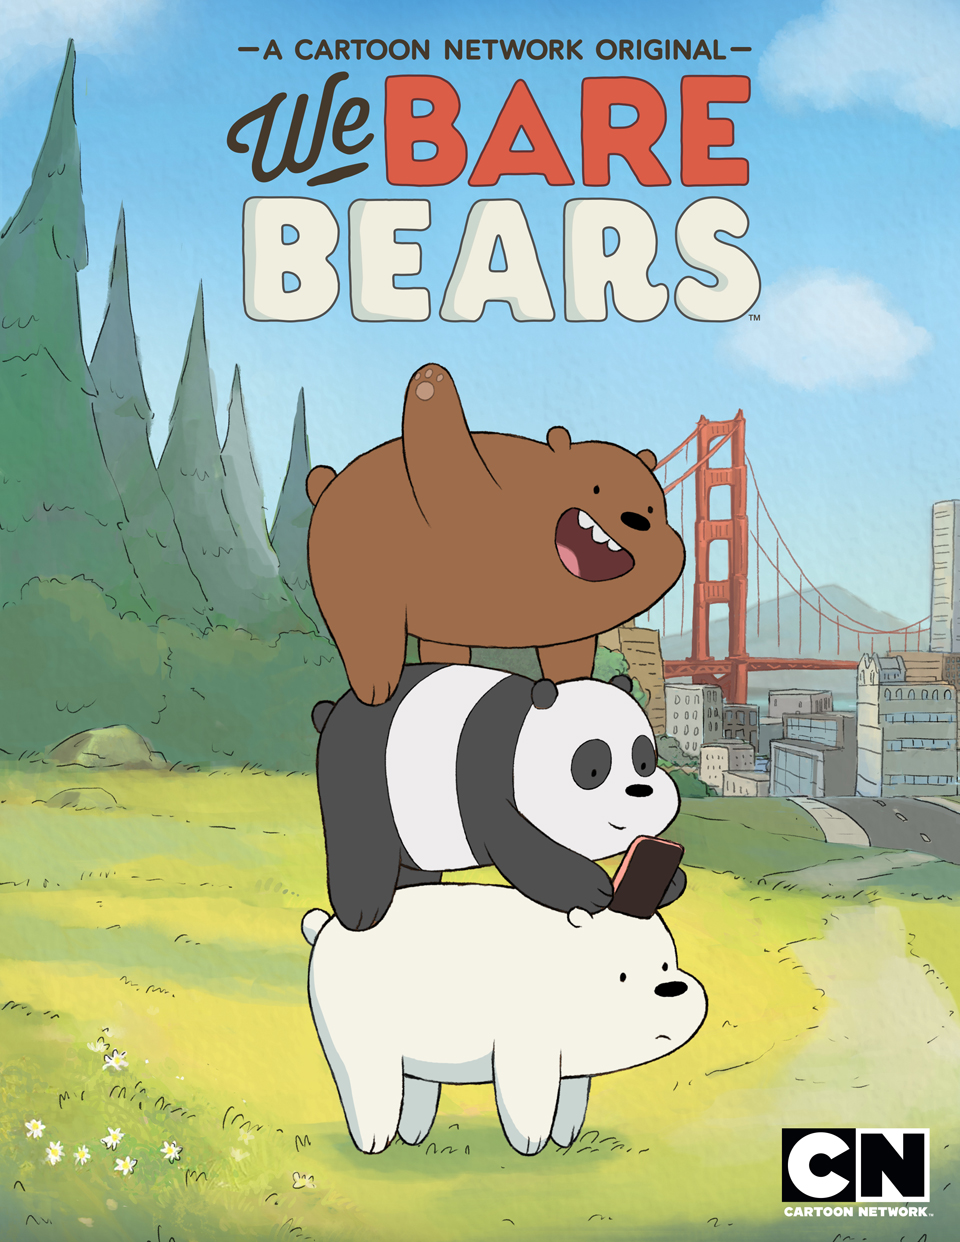 We Bare Bears là một bộ phim hoạt hình đình đám về ba chú gấu con đáng yêu và các cuộc phiêu lưu thú vị của họ. Nếu bạn là fan của bộ phim này, hoặc đơn giản chỉ là yêu thích những hình ảnh về gấu con đáng yêu, hãy xem ngay ảnh liên quan tới từ khóa We Bare Bears.